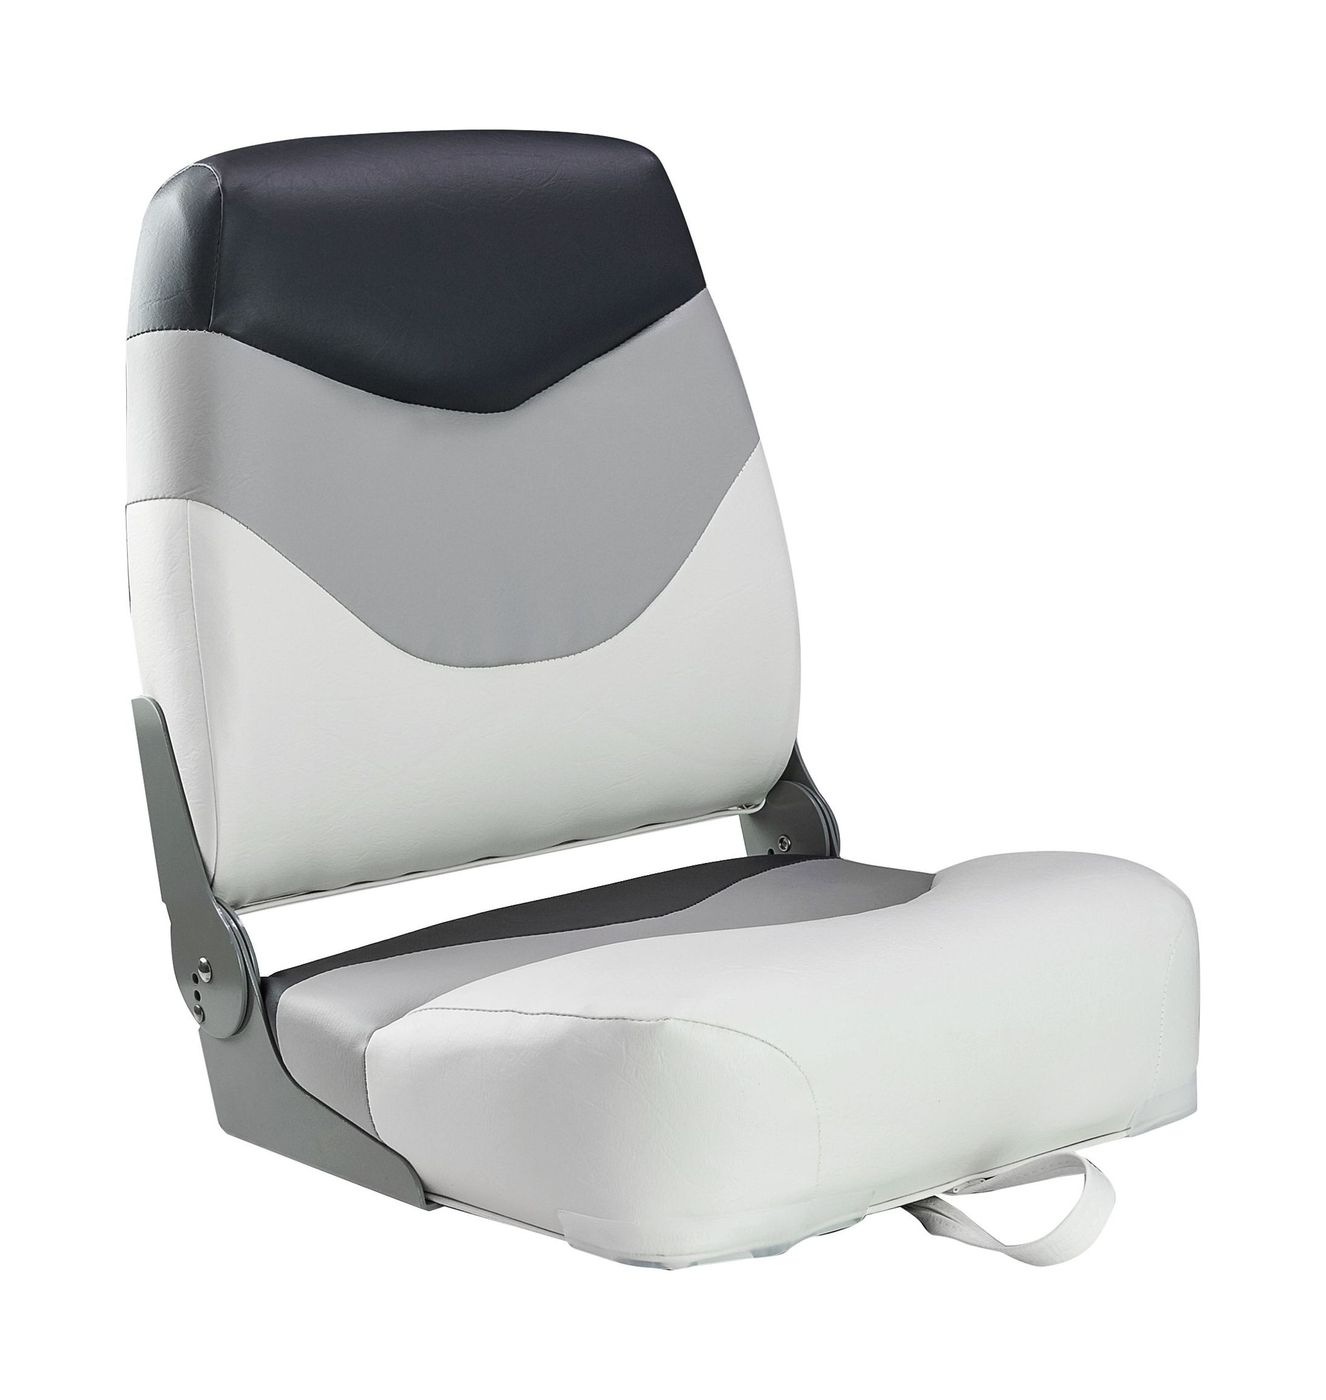 Кресло мягкое складное Premium, обивка винил, цвет белый/серый/угольный, Marine Rocket 75128WGC-MR кресло складное мягкое skipper серый темно серый 1061057